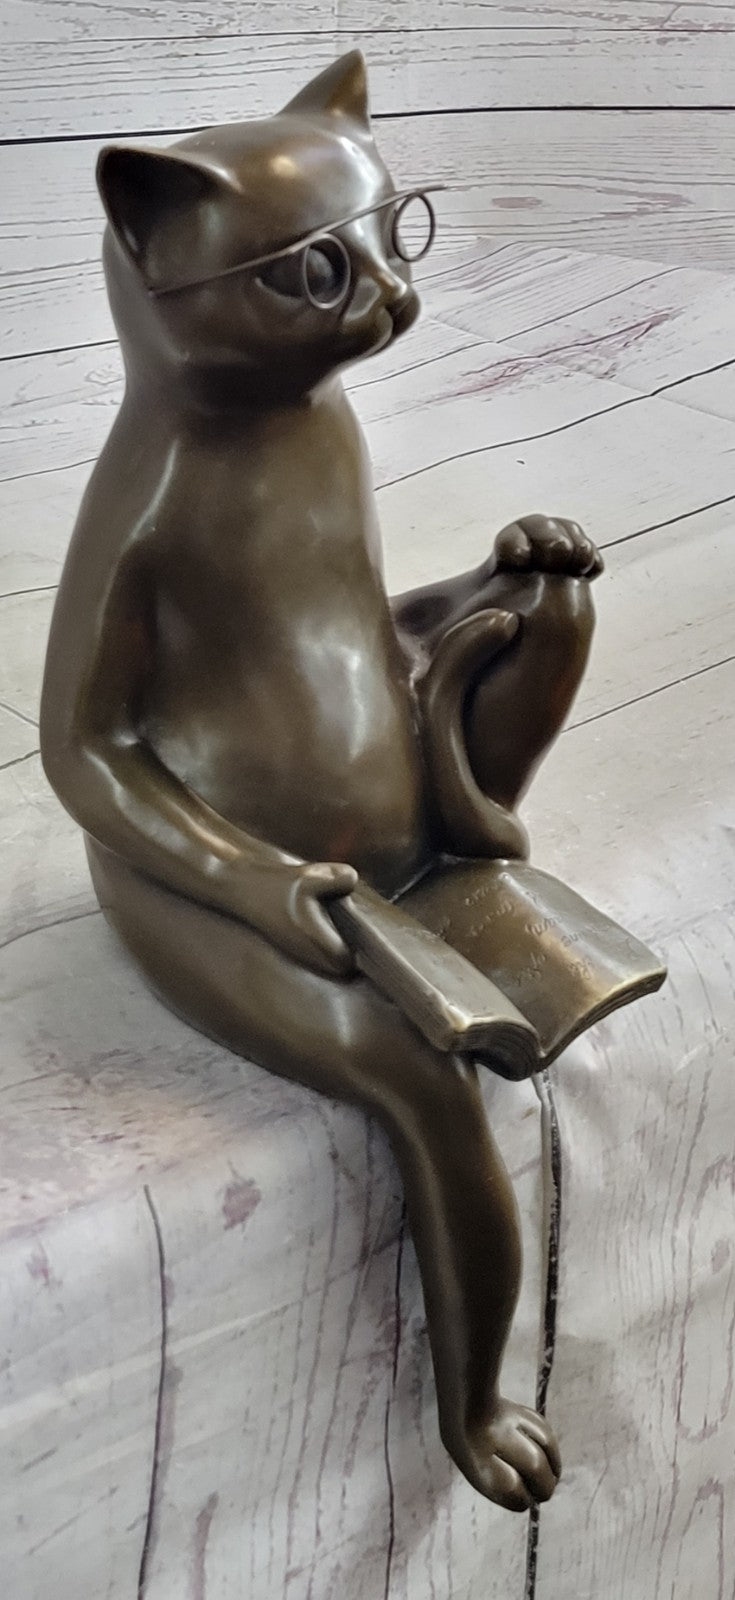 CAT Figurine STATUE Reading GLASSES 100% Bronze Indoor OUTDOOR Gift Hotcast